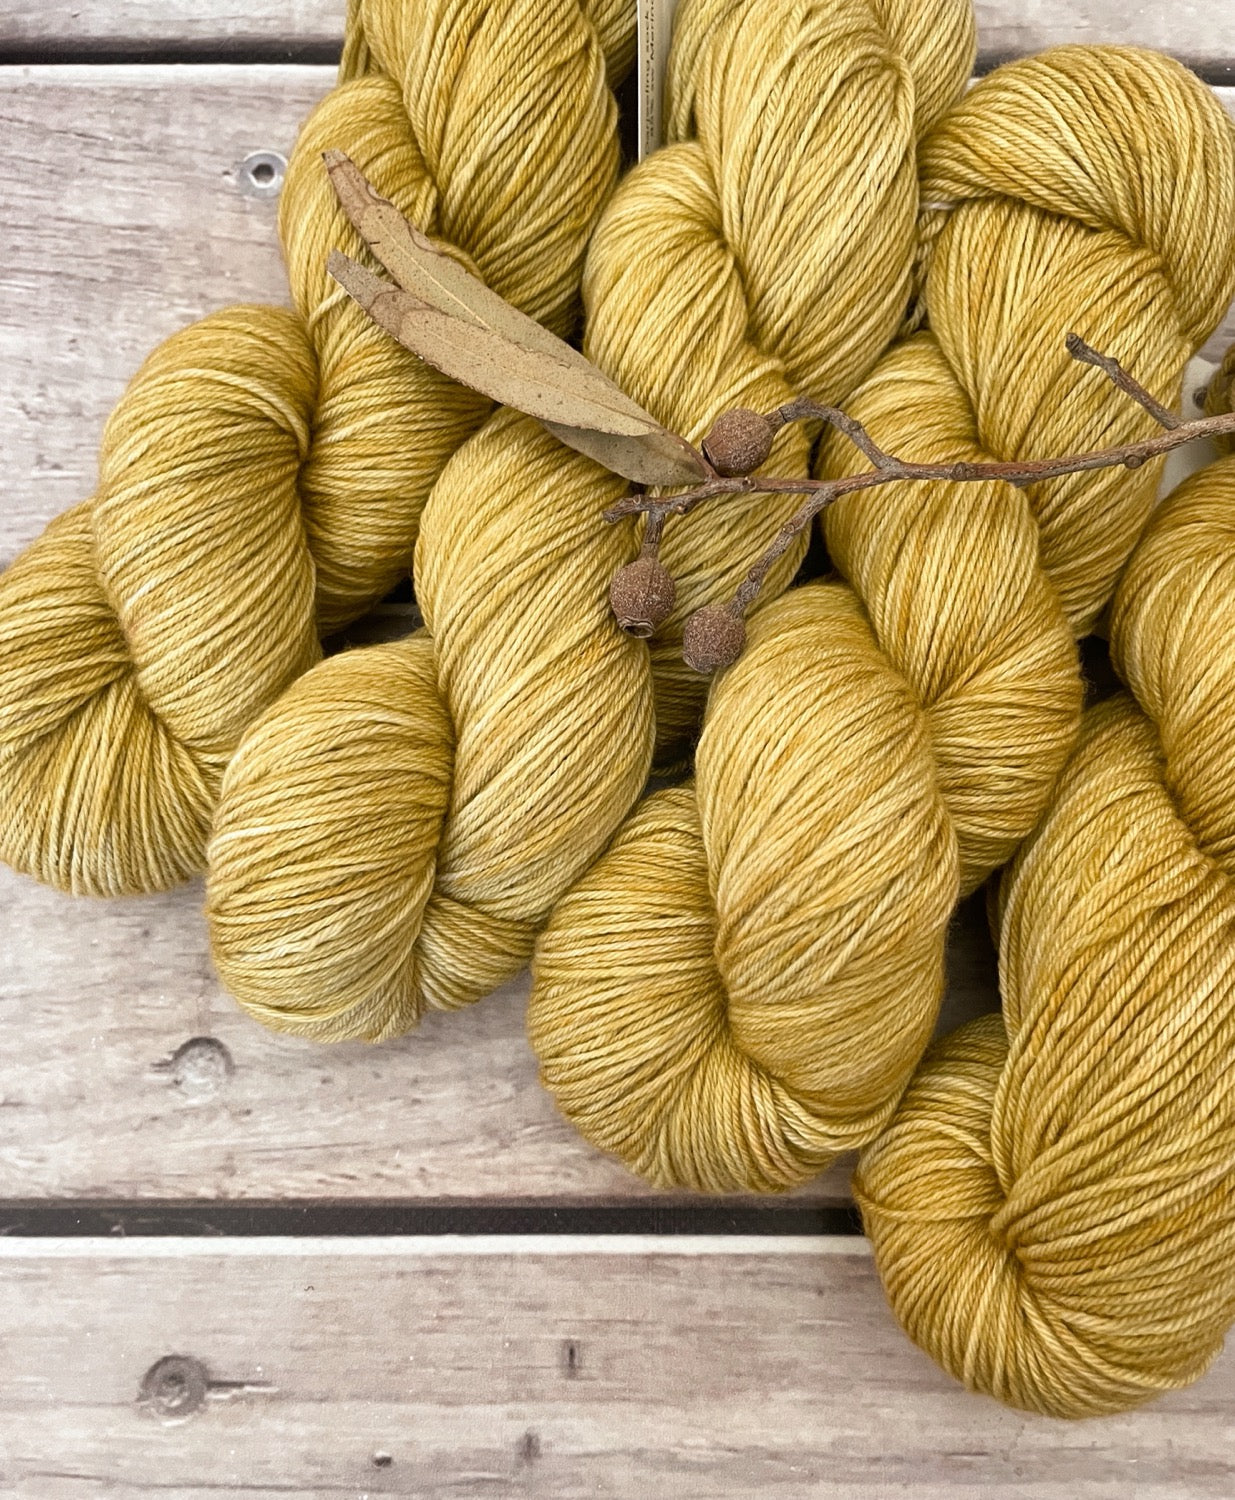 Uprising - 4ply sock yarn in merino and nylon - Darjeeling